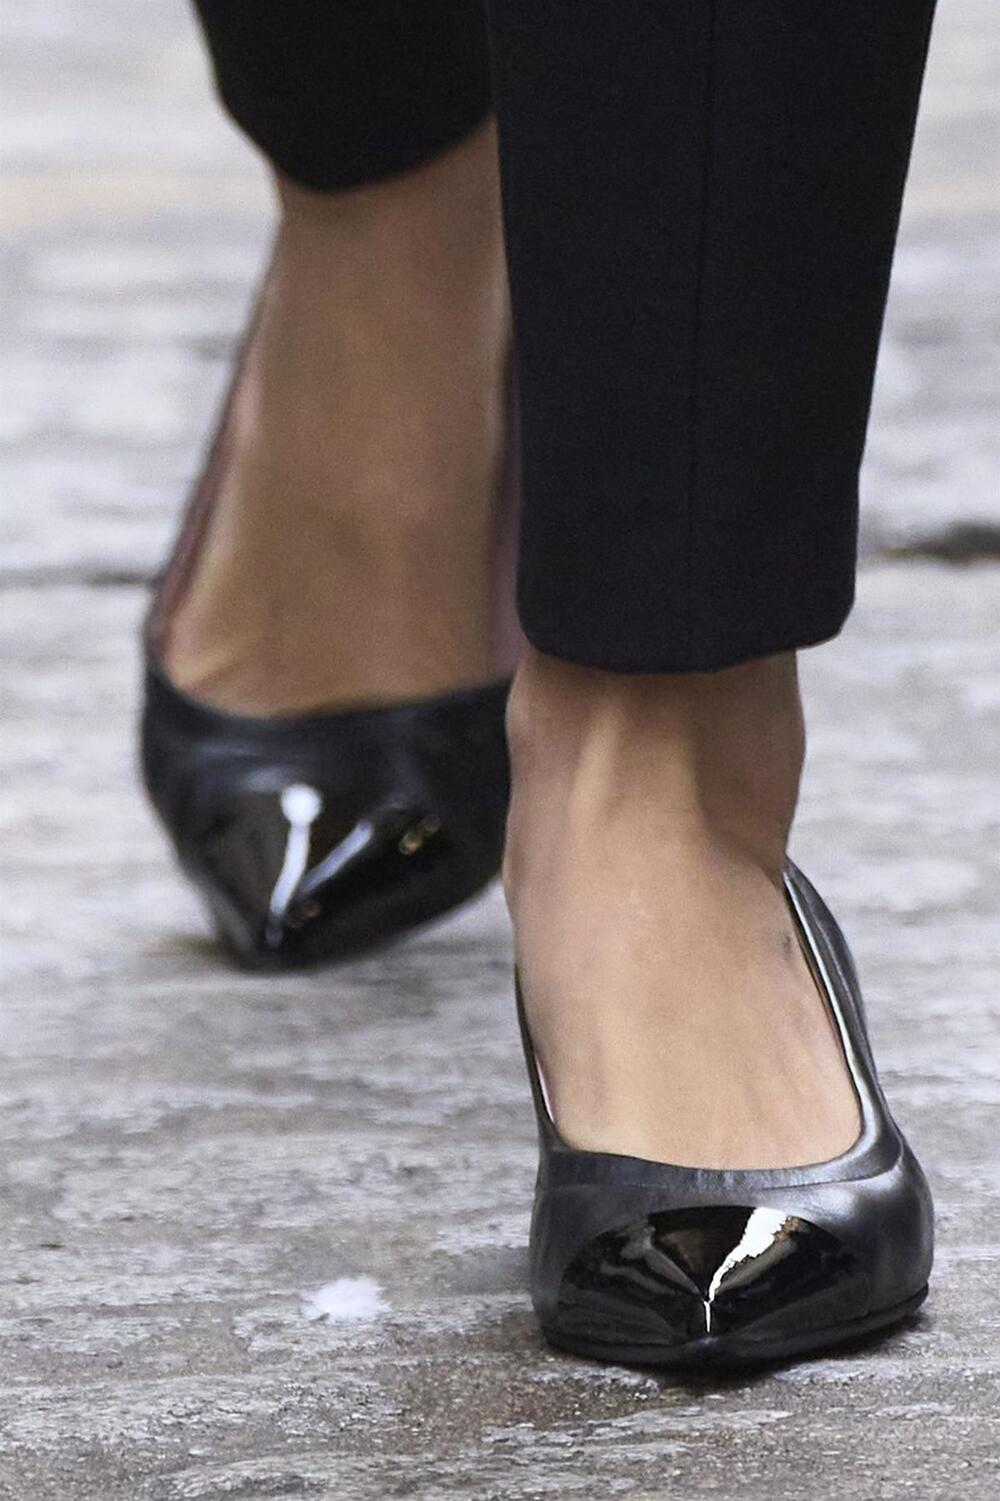 Nova modna kombinacija kraljice Leticije od Španije: crno-beli pepito Uterqüe sako, crne pantlaone i cipele sa niskom kitten štiklom